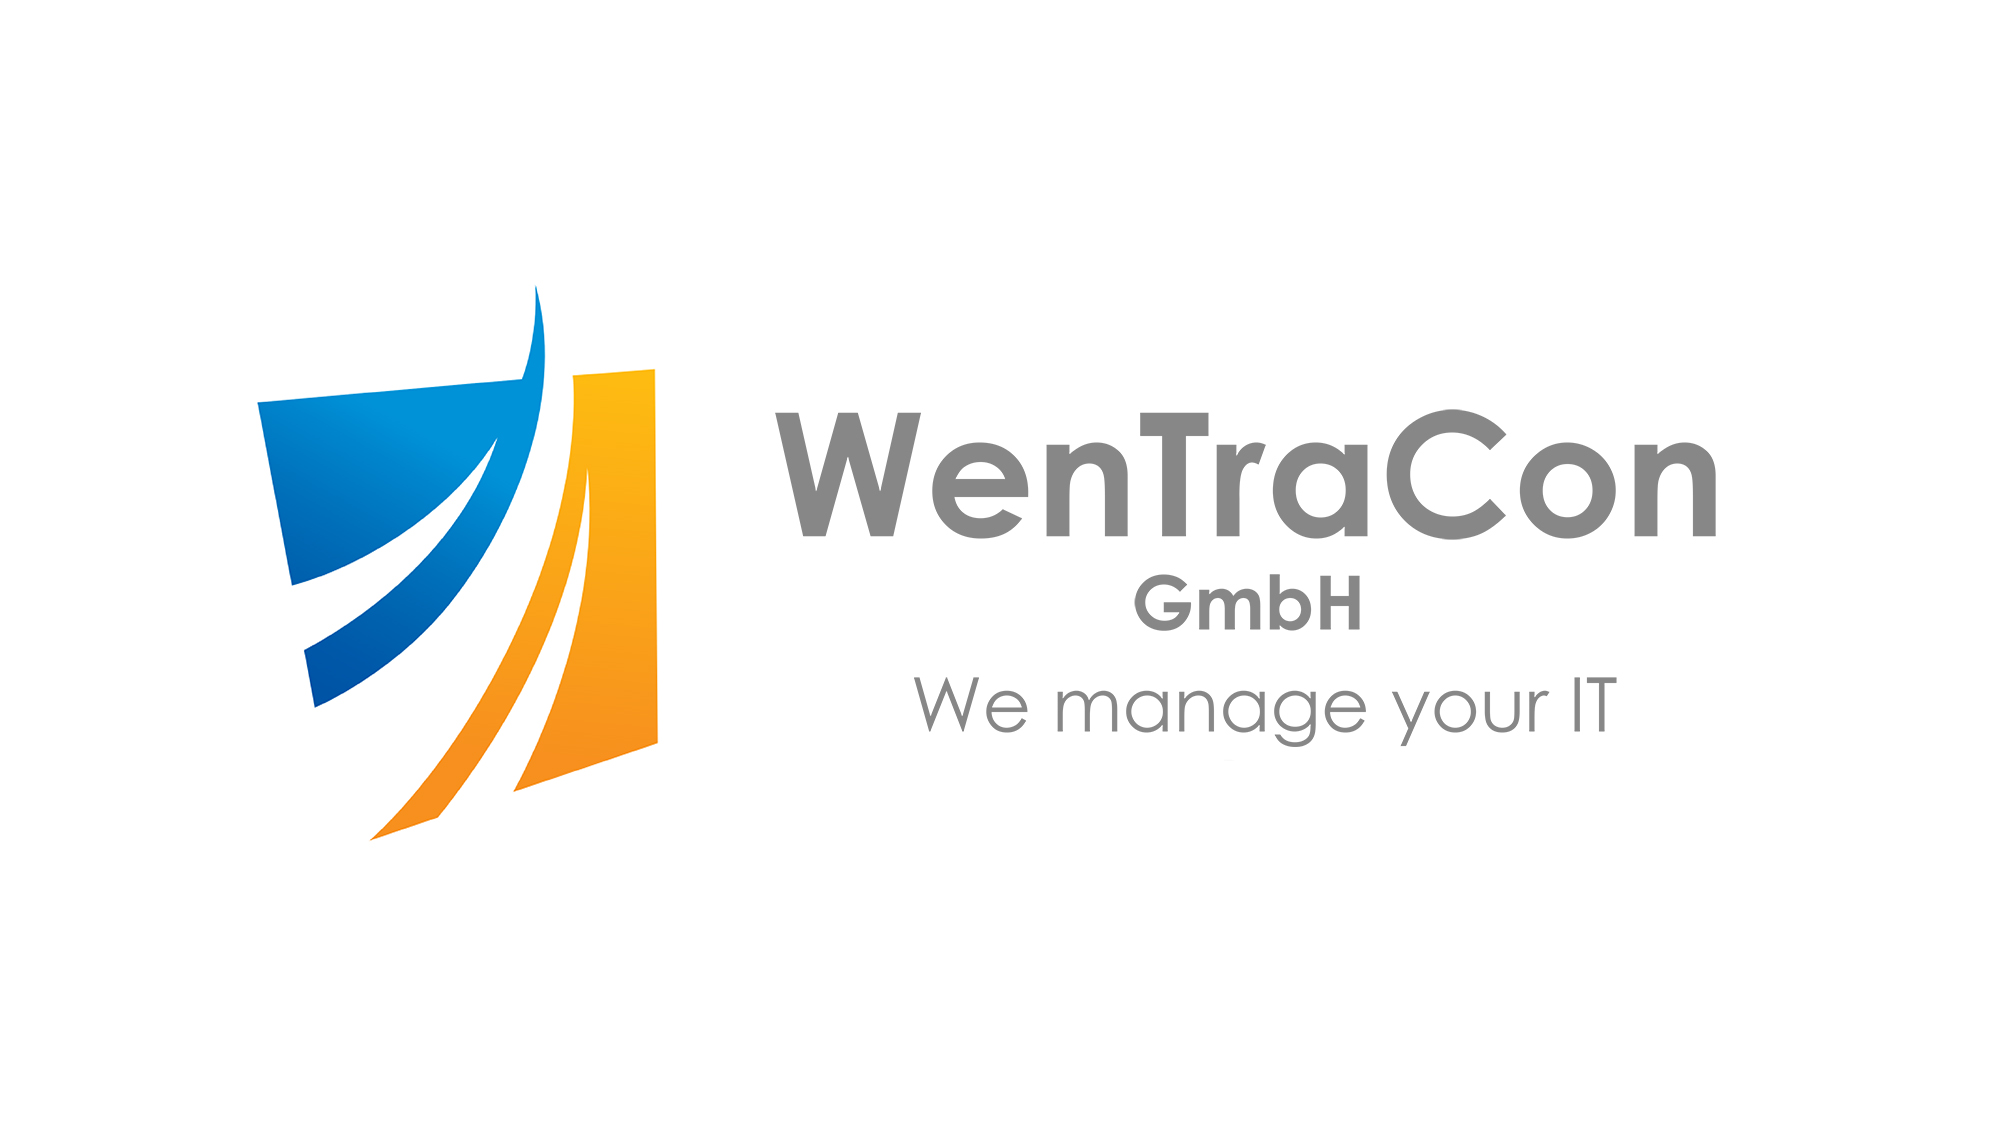 WenTraCon GmbH